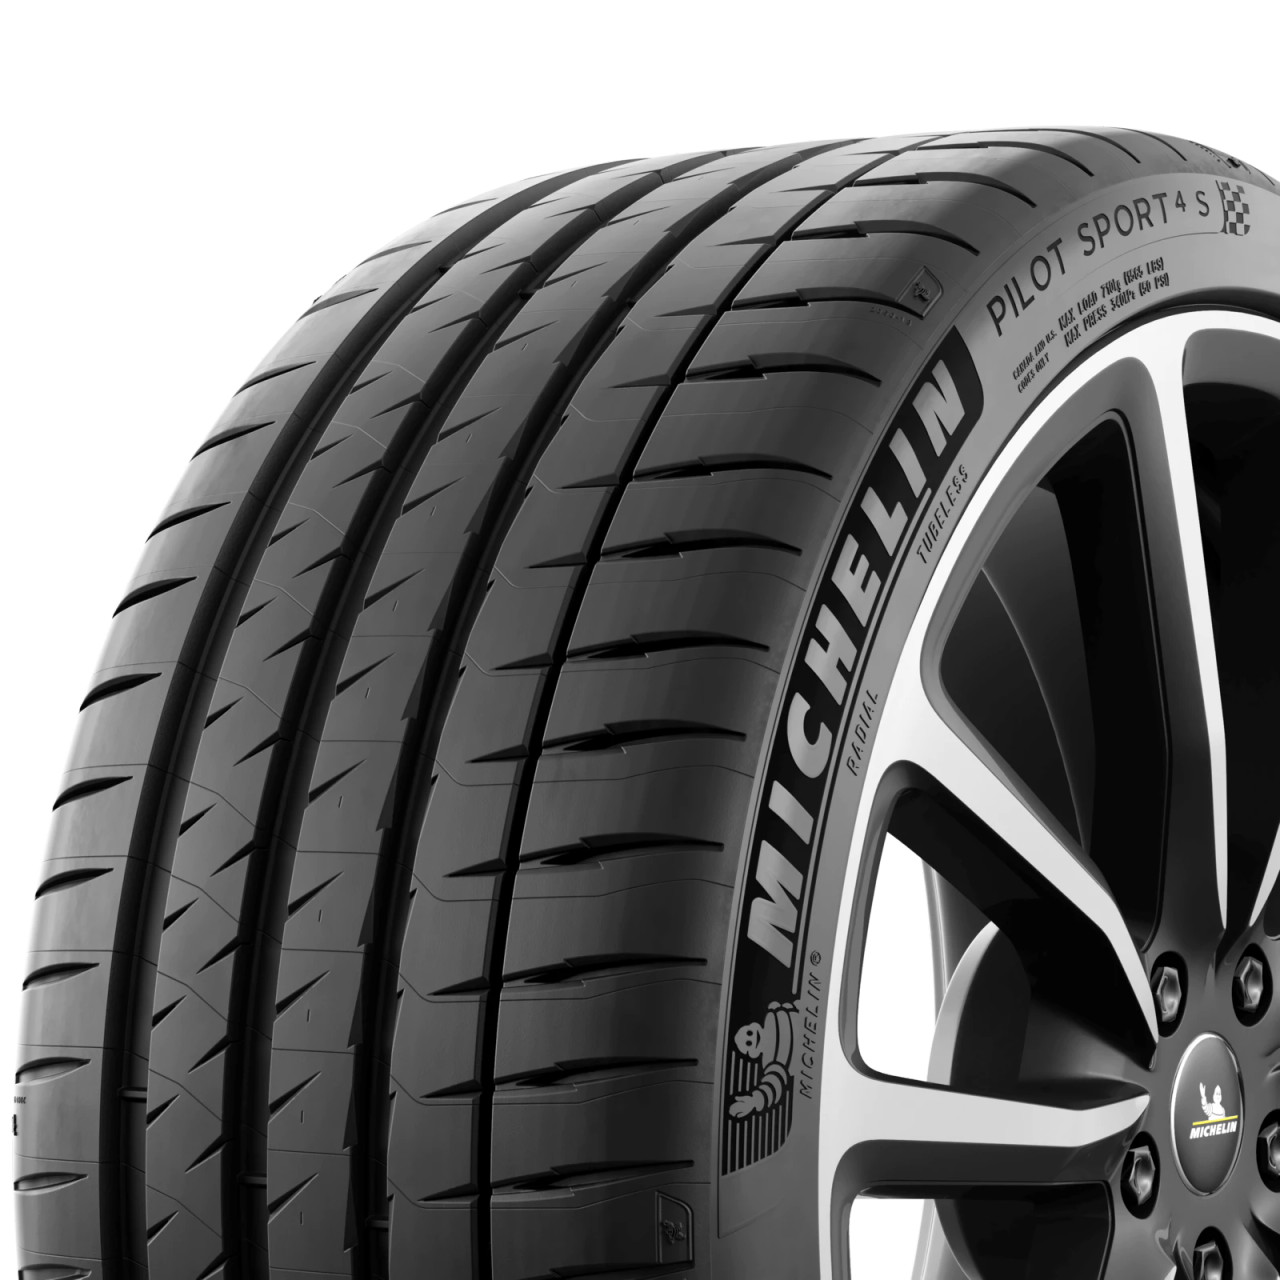 Michelin Pilot Sport 4S 275/35ZR19 (100Y) TPC Spec, Acoustic Technology Tire